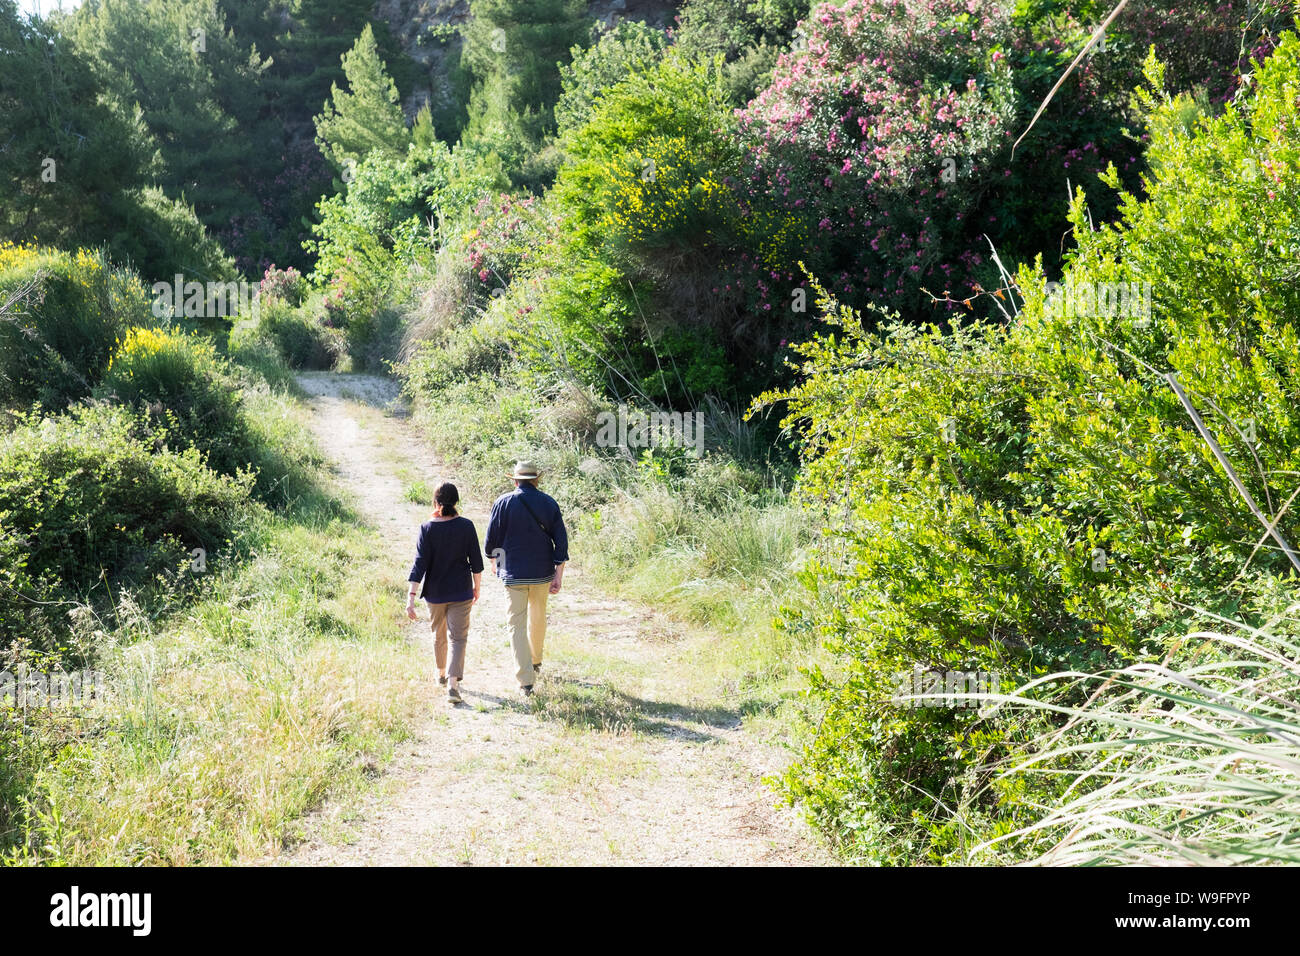 Une aventure couple dans la fin des années 60 début des années 70, marcher dans un chemin bordé de fleurs sauvages et d'arbustes en Céphalonie en Grèce pendant les vacances. Banque D'Images